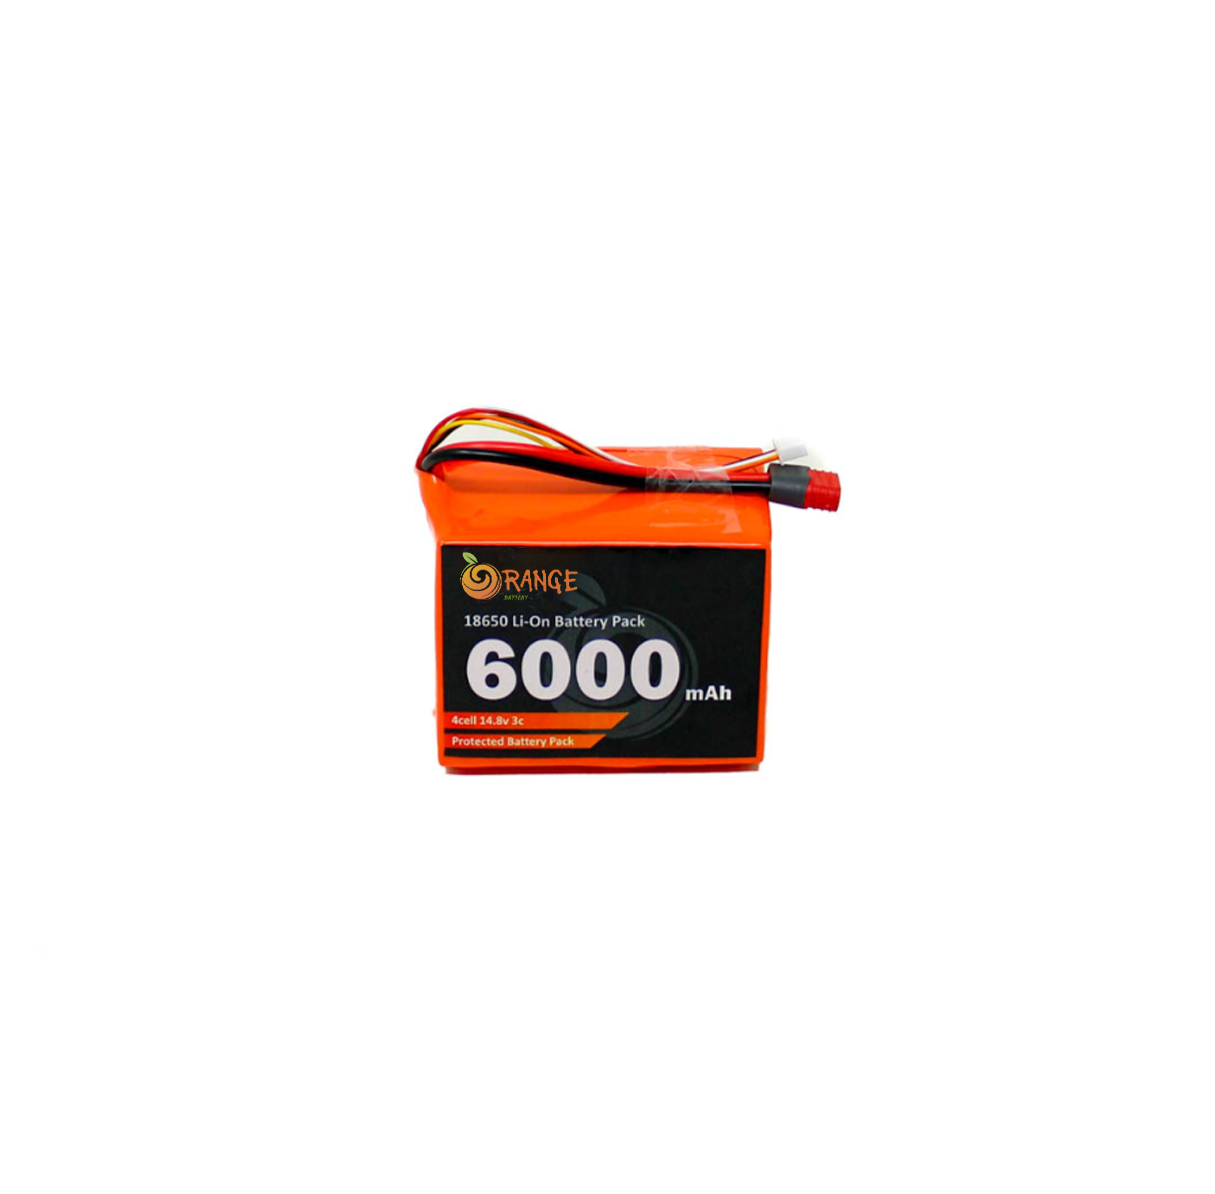 Buy Orange NMC 18650 14.8V 6000mAh 3C 4S2P Li-Ion Battery Pack Online at